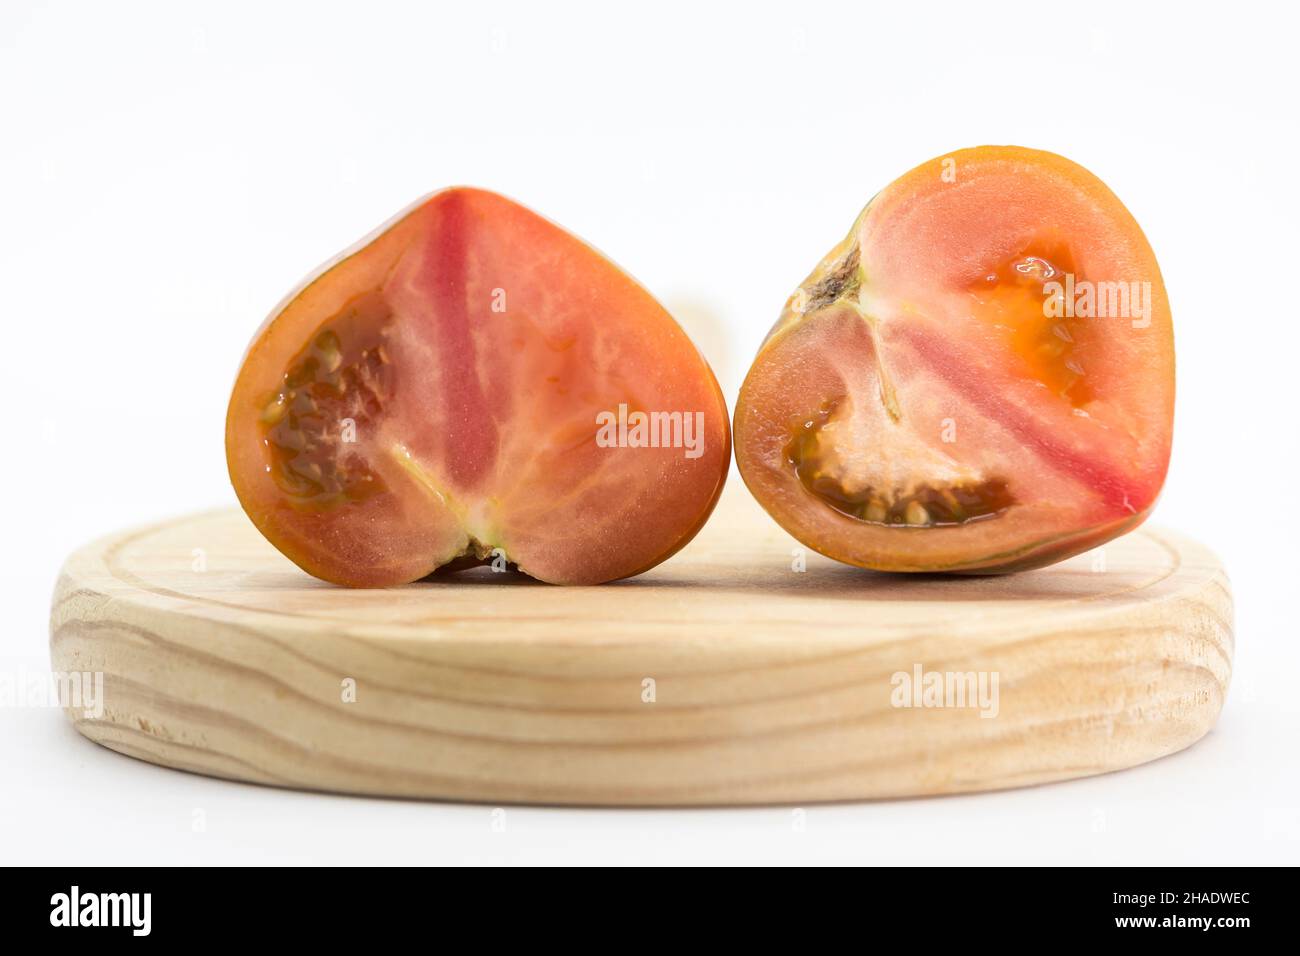 tomate coupée en deux et placée sur un panneau rond en bois, le tout sur fond blanc Banque D'Images